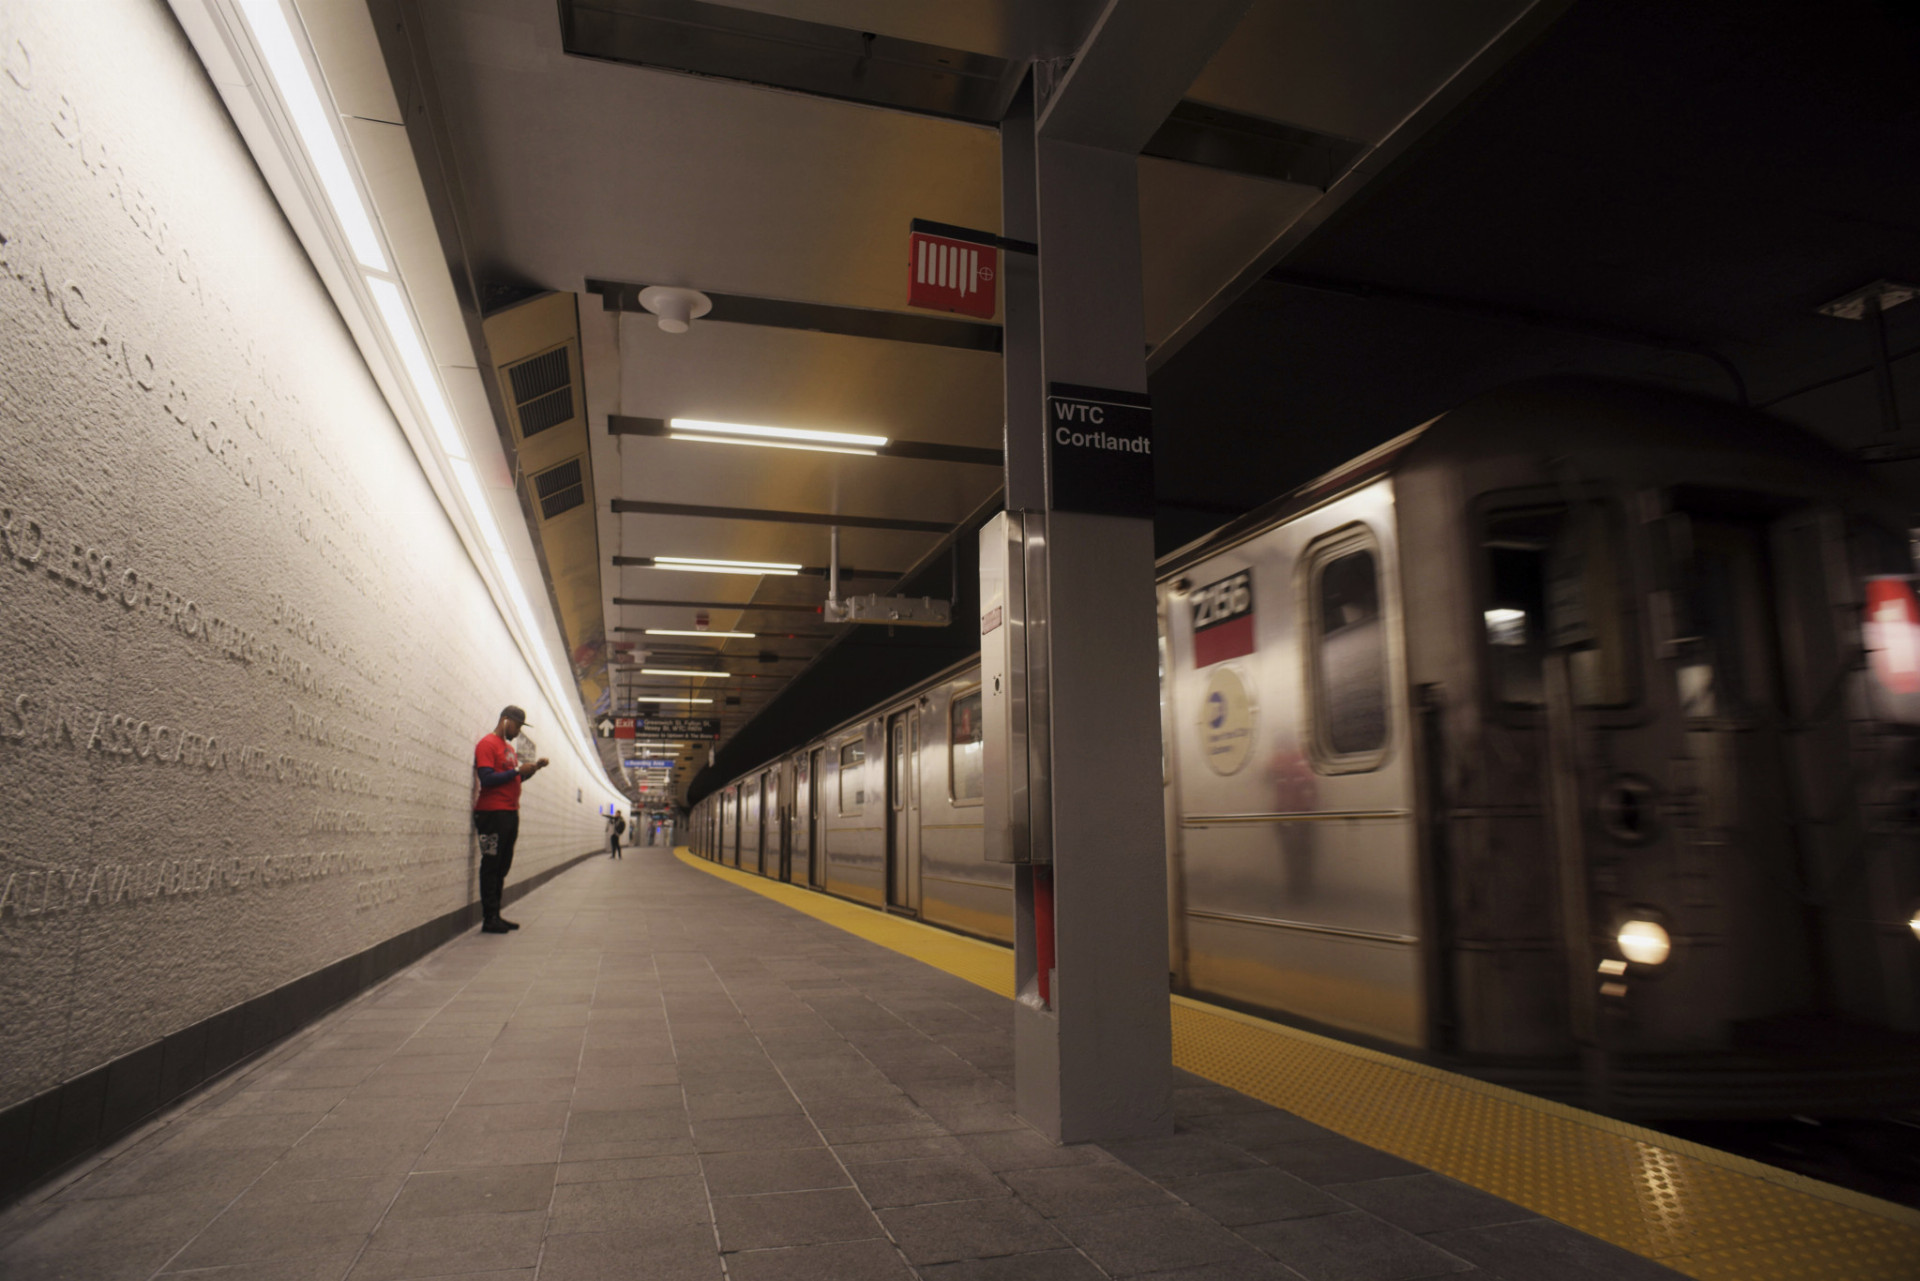 Cestujúci čakajú na stanici metra WTC Cortlandt 8. septembra 2018 v New Yorku. Po takmer 17 rokoch v New Yorku znovu otvorili stanicu metra, ktorá bola zničená 11. septembra 2001 pri teroristickom útoku na USA. Stanica metra Cortlandt Street linky 1 bola pochovaná pod troskami po náraze lietadiel do budov newyorského Svetového obchodného centra (WTC) prezývaných Dvojičky. Prvý vlak na novej stanici metra, ktorú premenovali na WTC Cortlandt, zastavil v sobotu napoludnie.